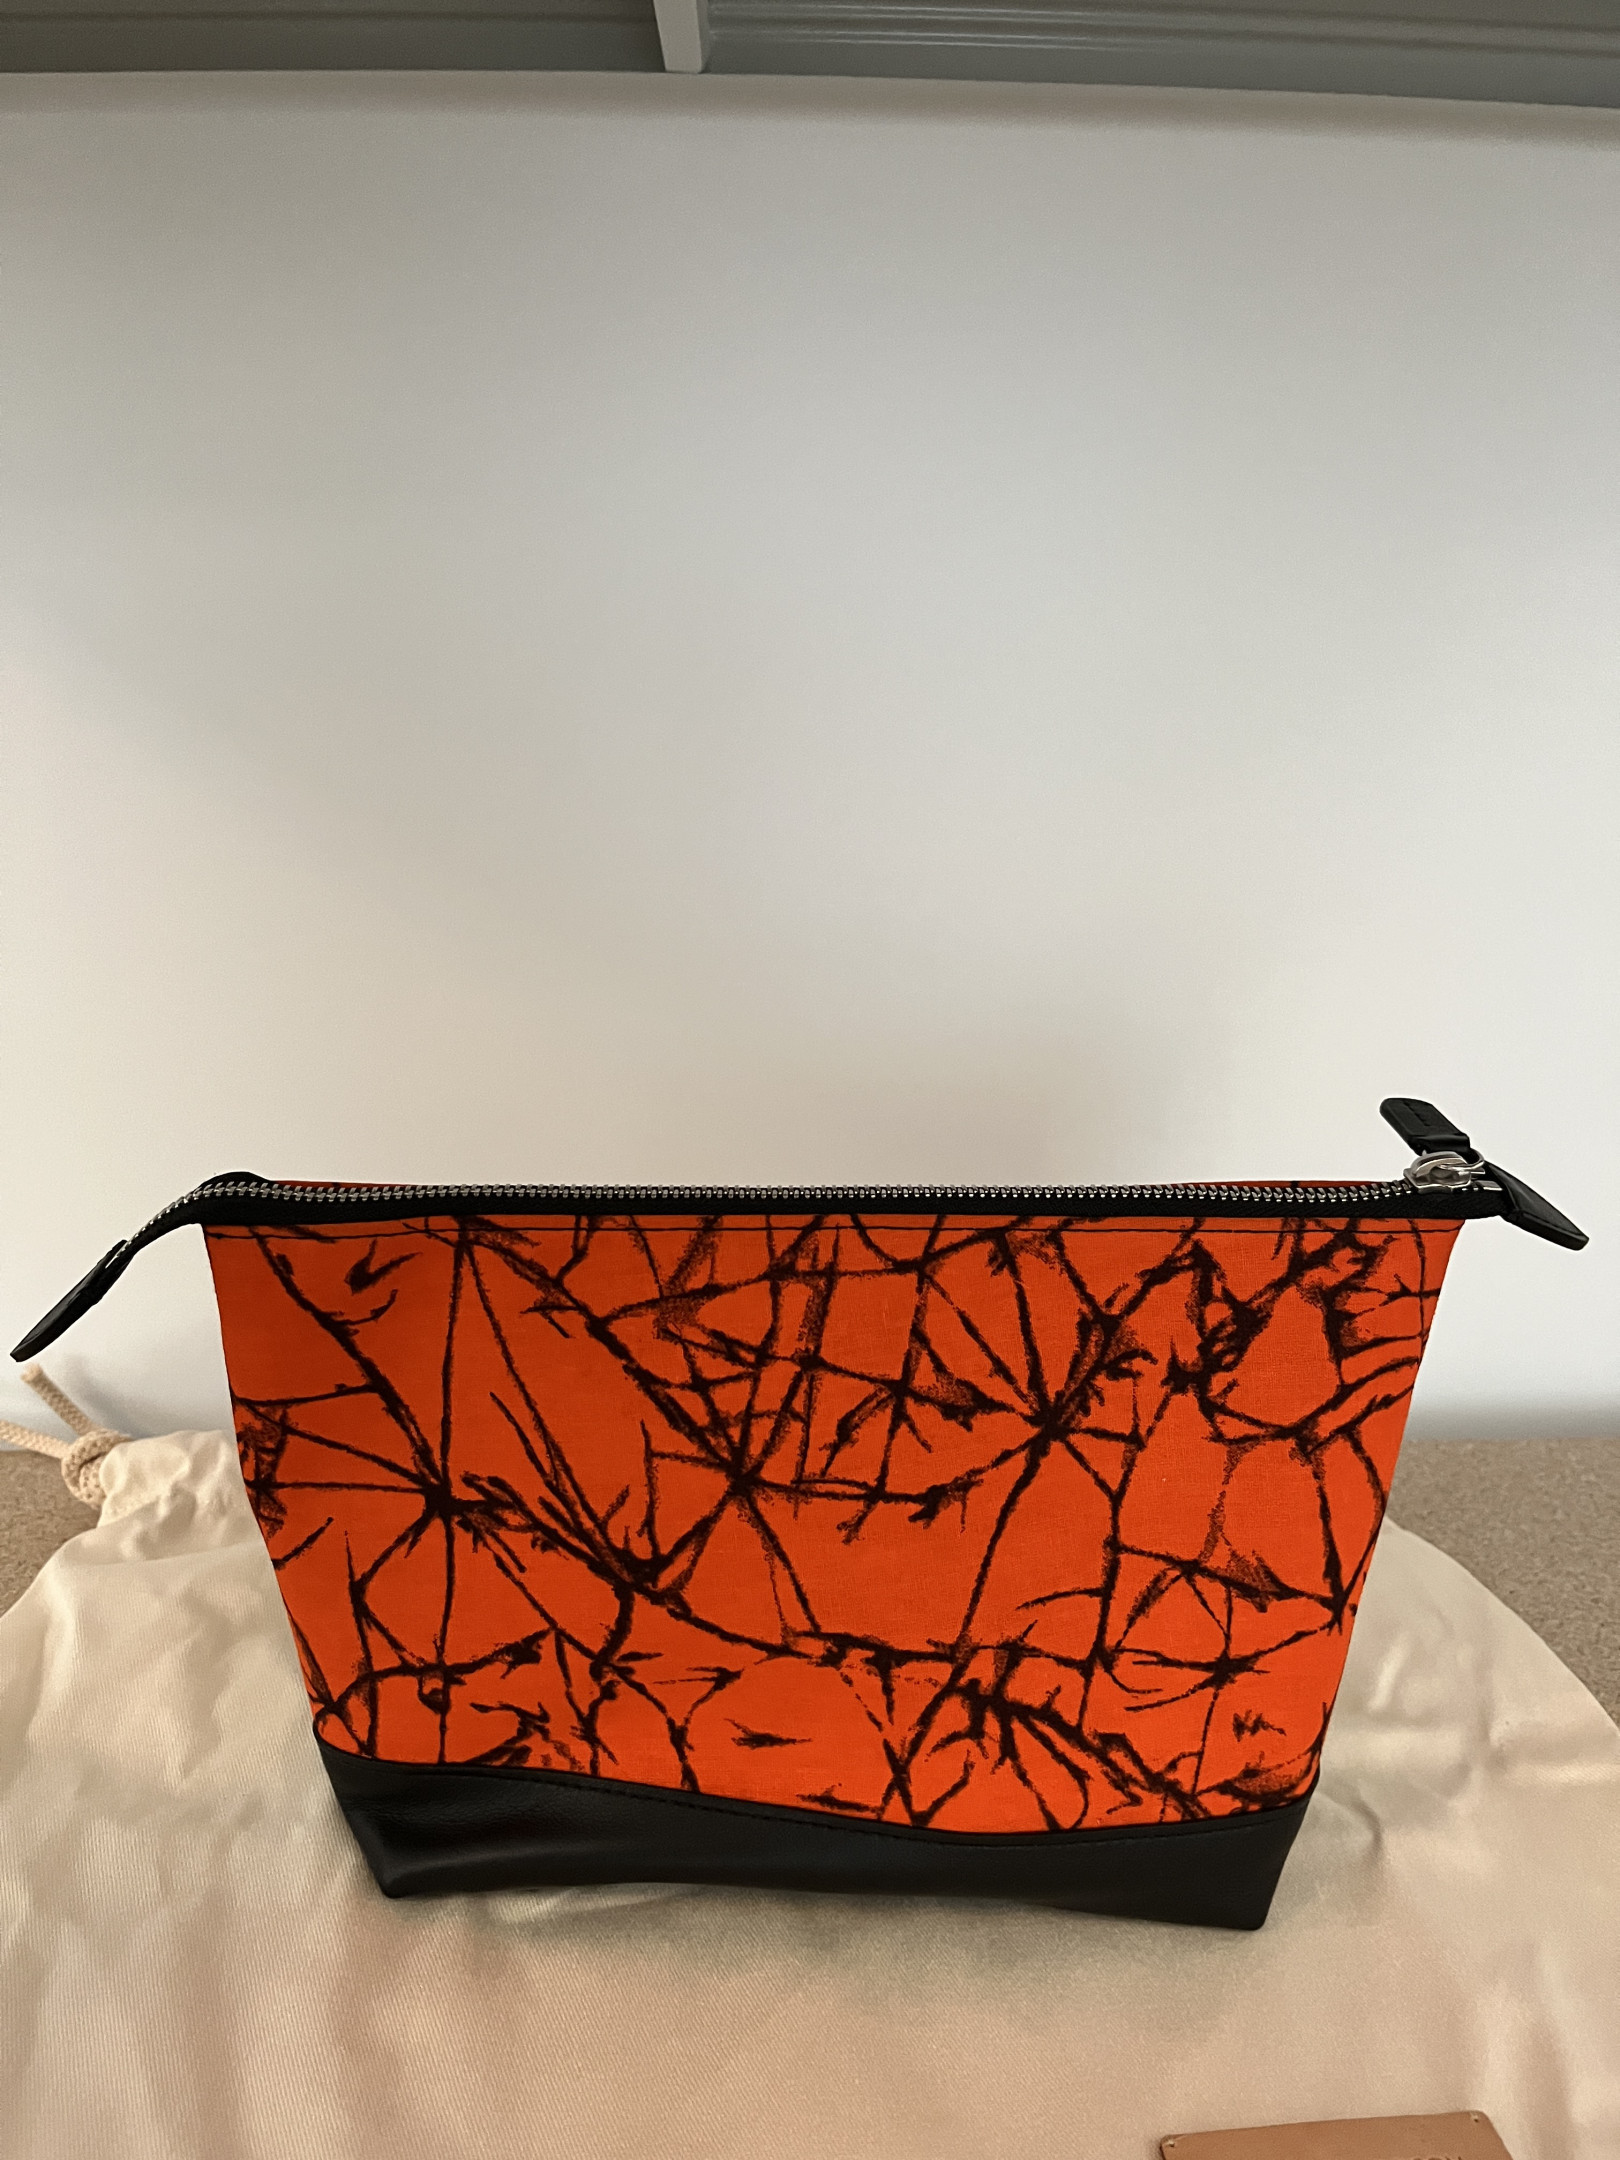 Orange fabric case